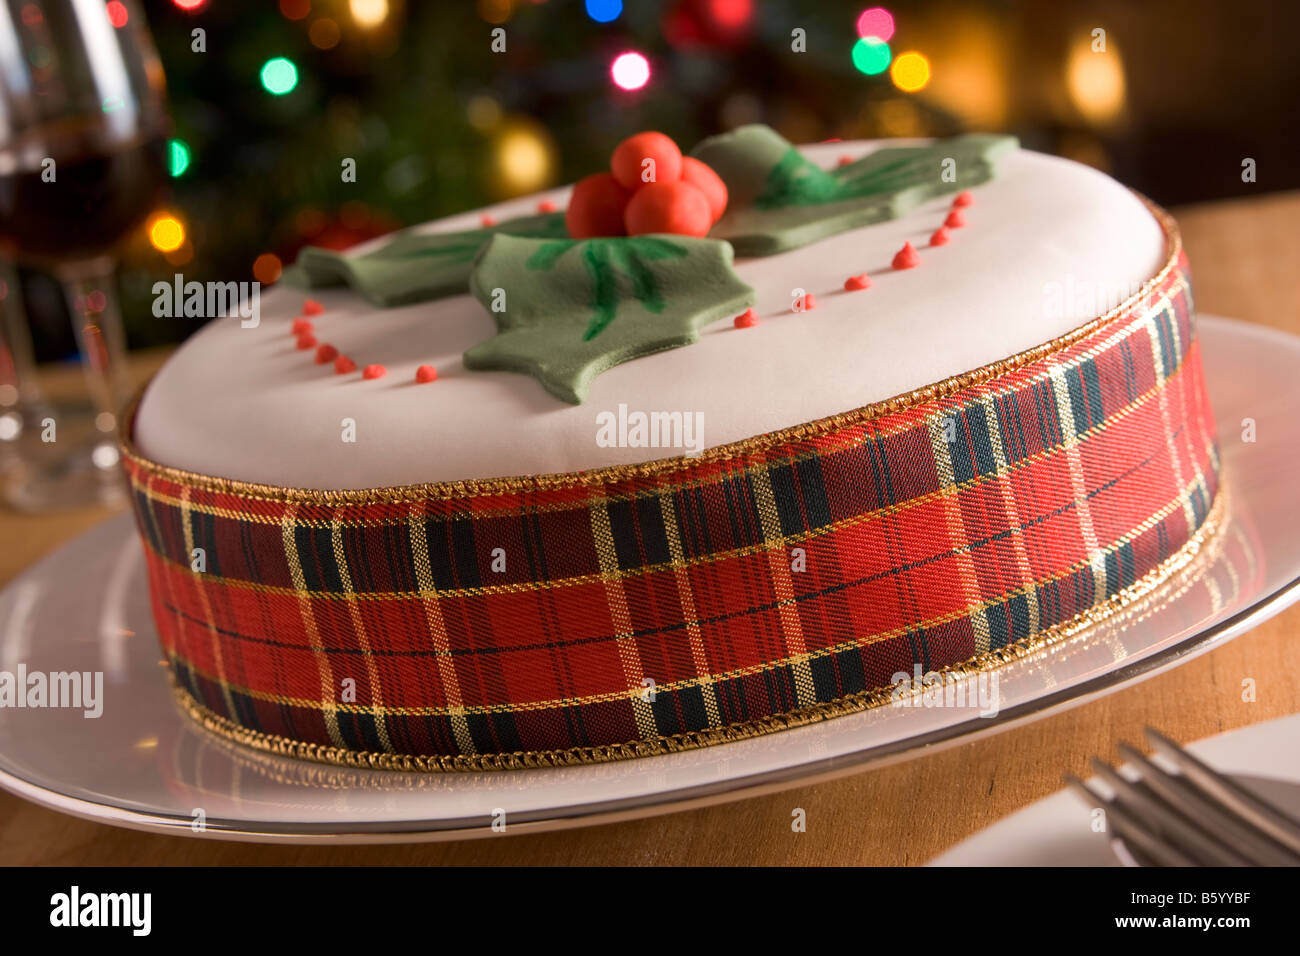 Dekorierte Weihnachten Obstkuchen Stockfoto